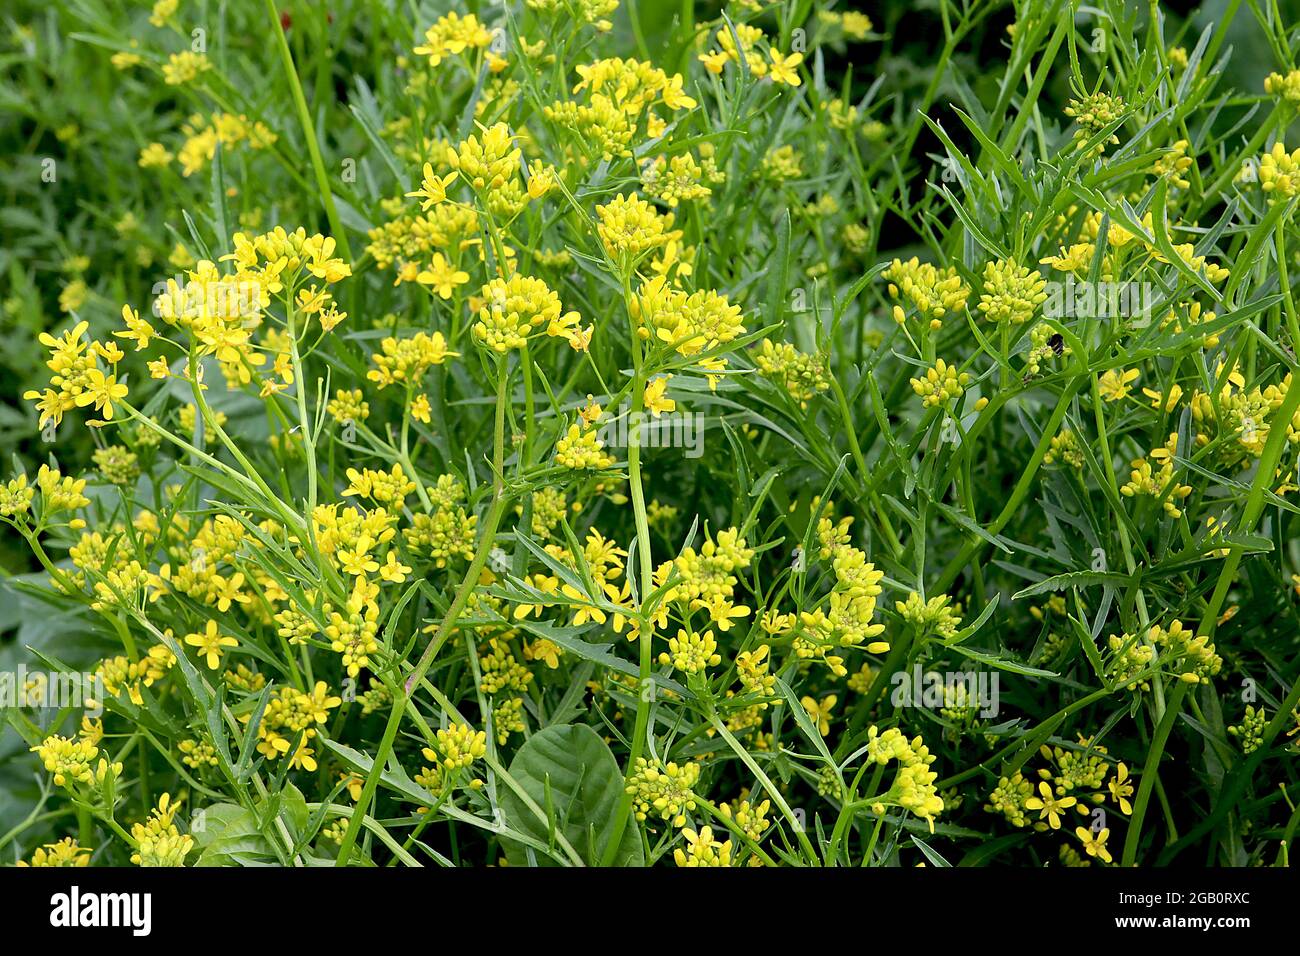 Rorippa sylvestris Cress amarillo crepitante – racimos de pequeñas flores amarillas sobre tallos gruesos y hojas lobuladas, junio, Inglaterra, Reino Unido Foto de stock